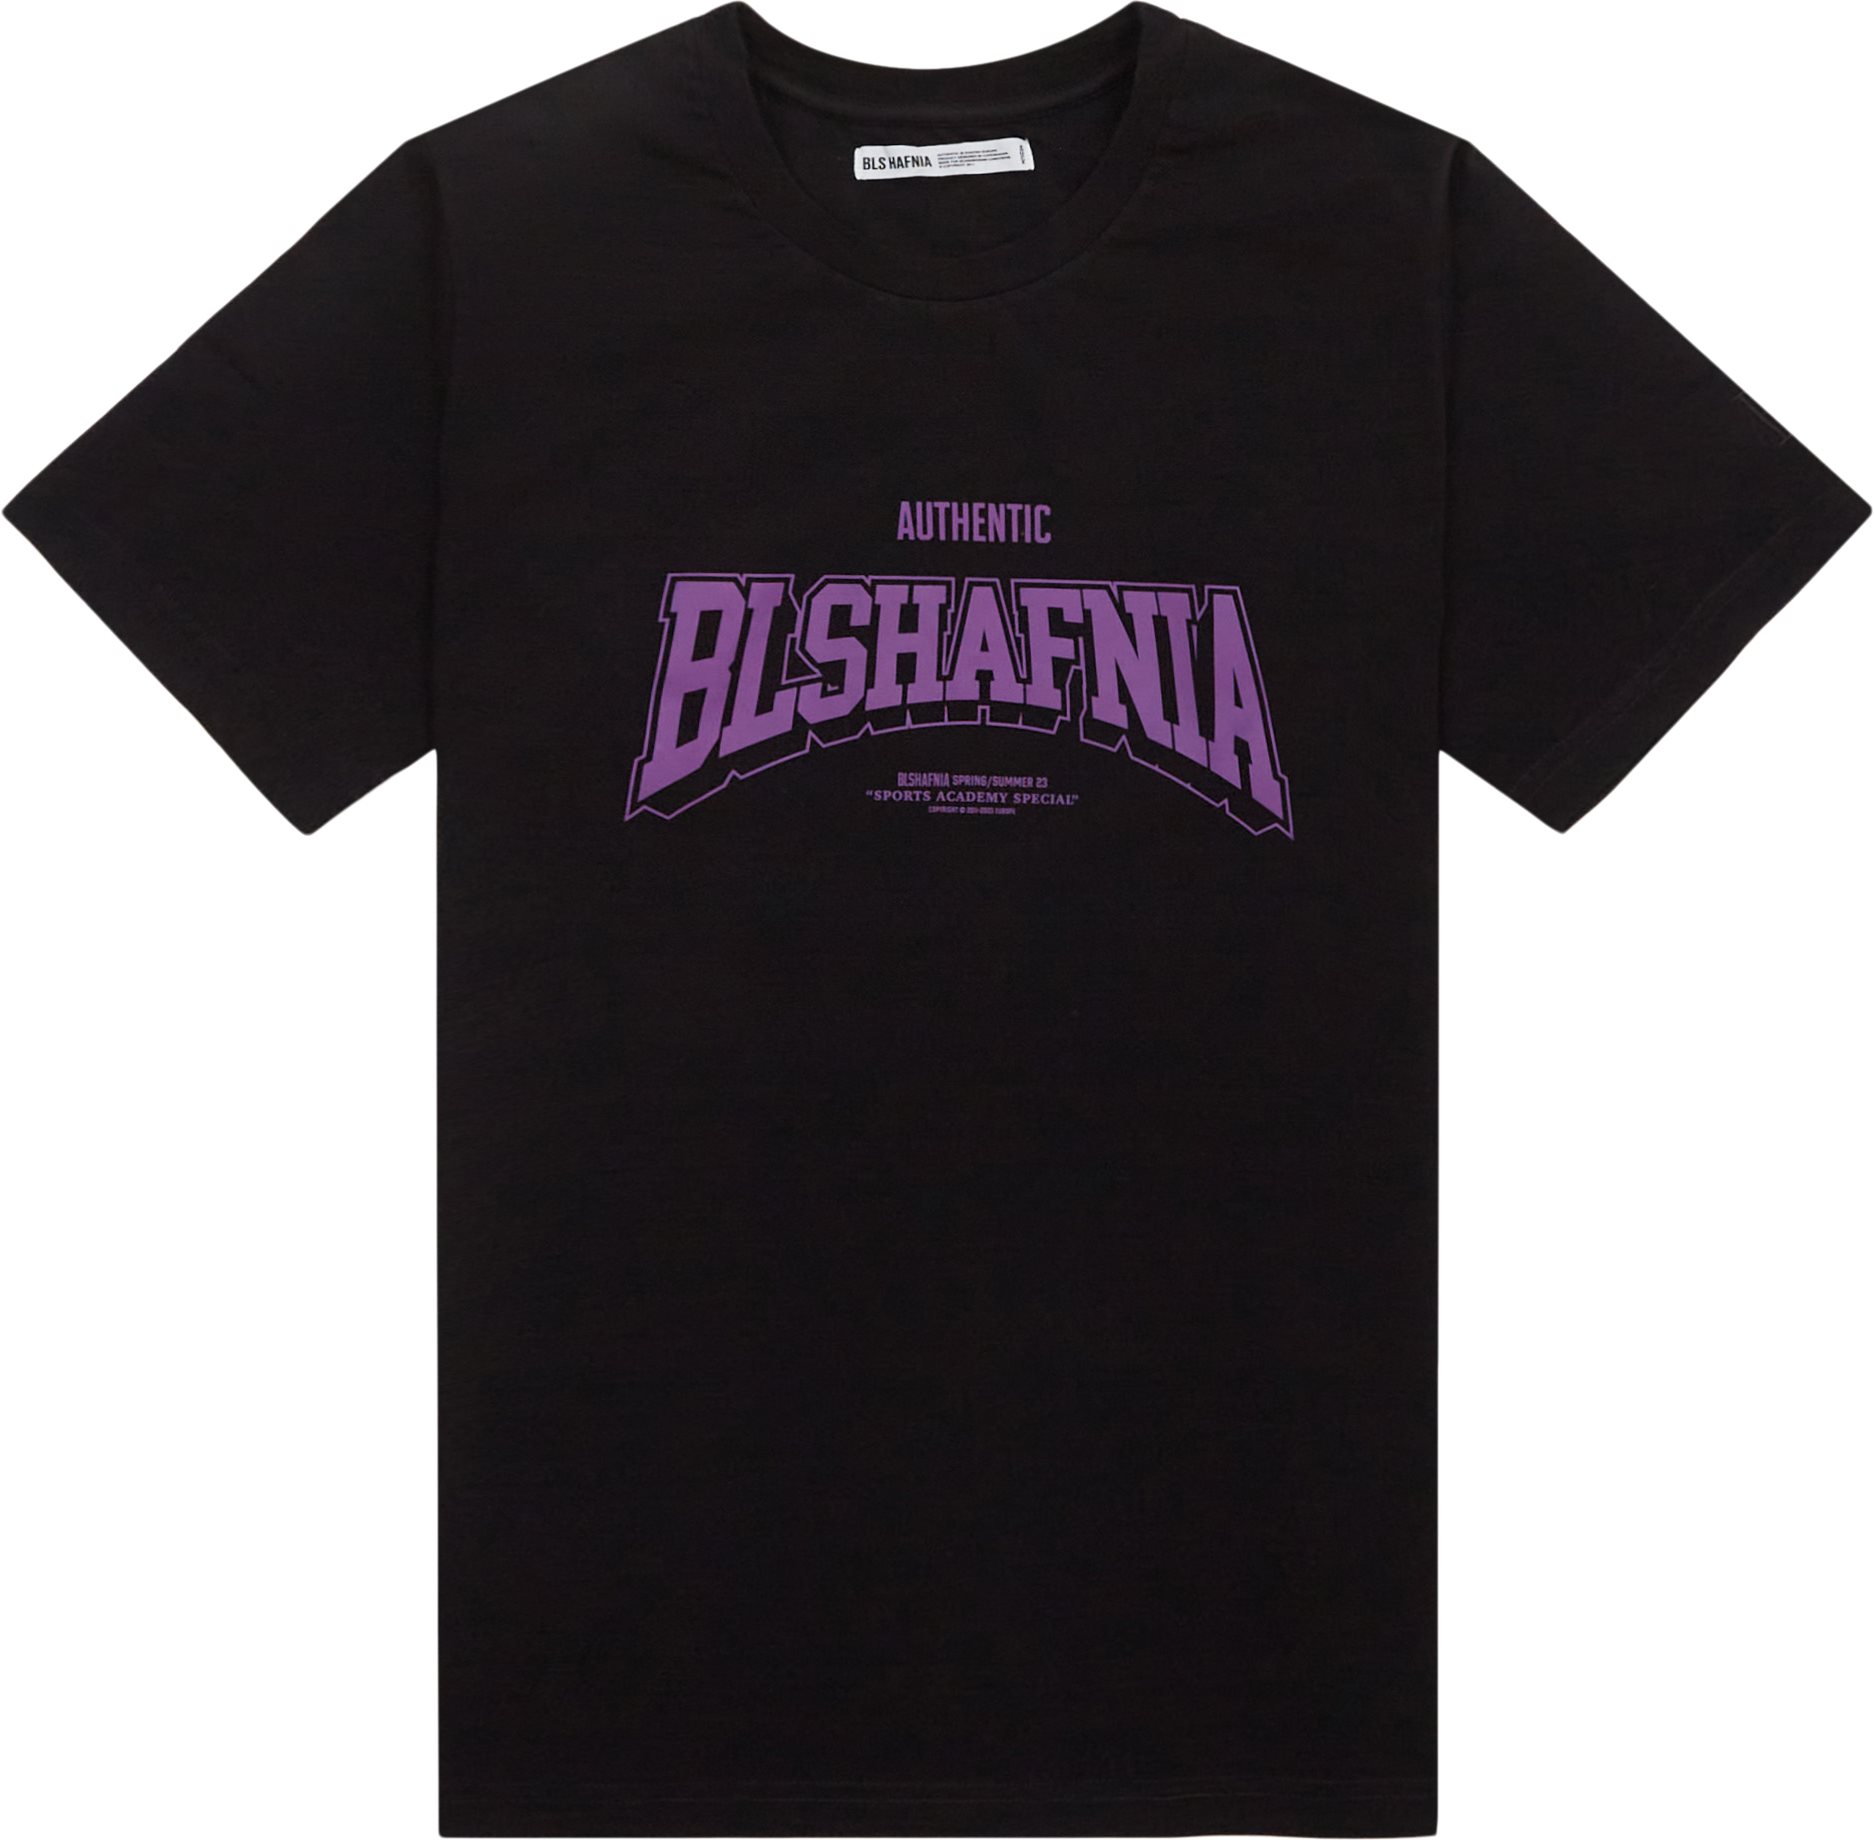 BLS T-shirts COLLEGE 2 T-SHIRT 202303023 Black